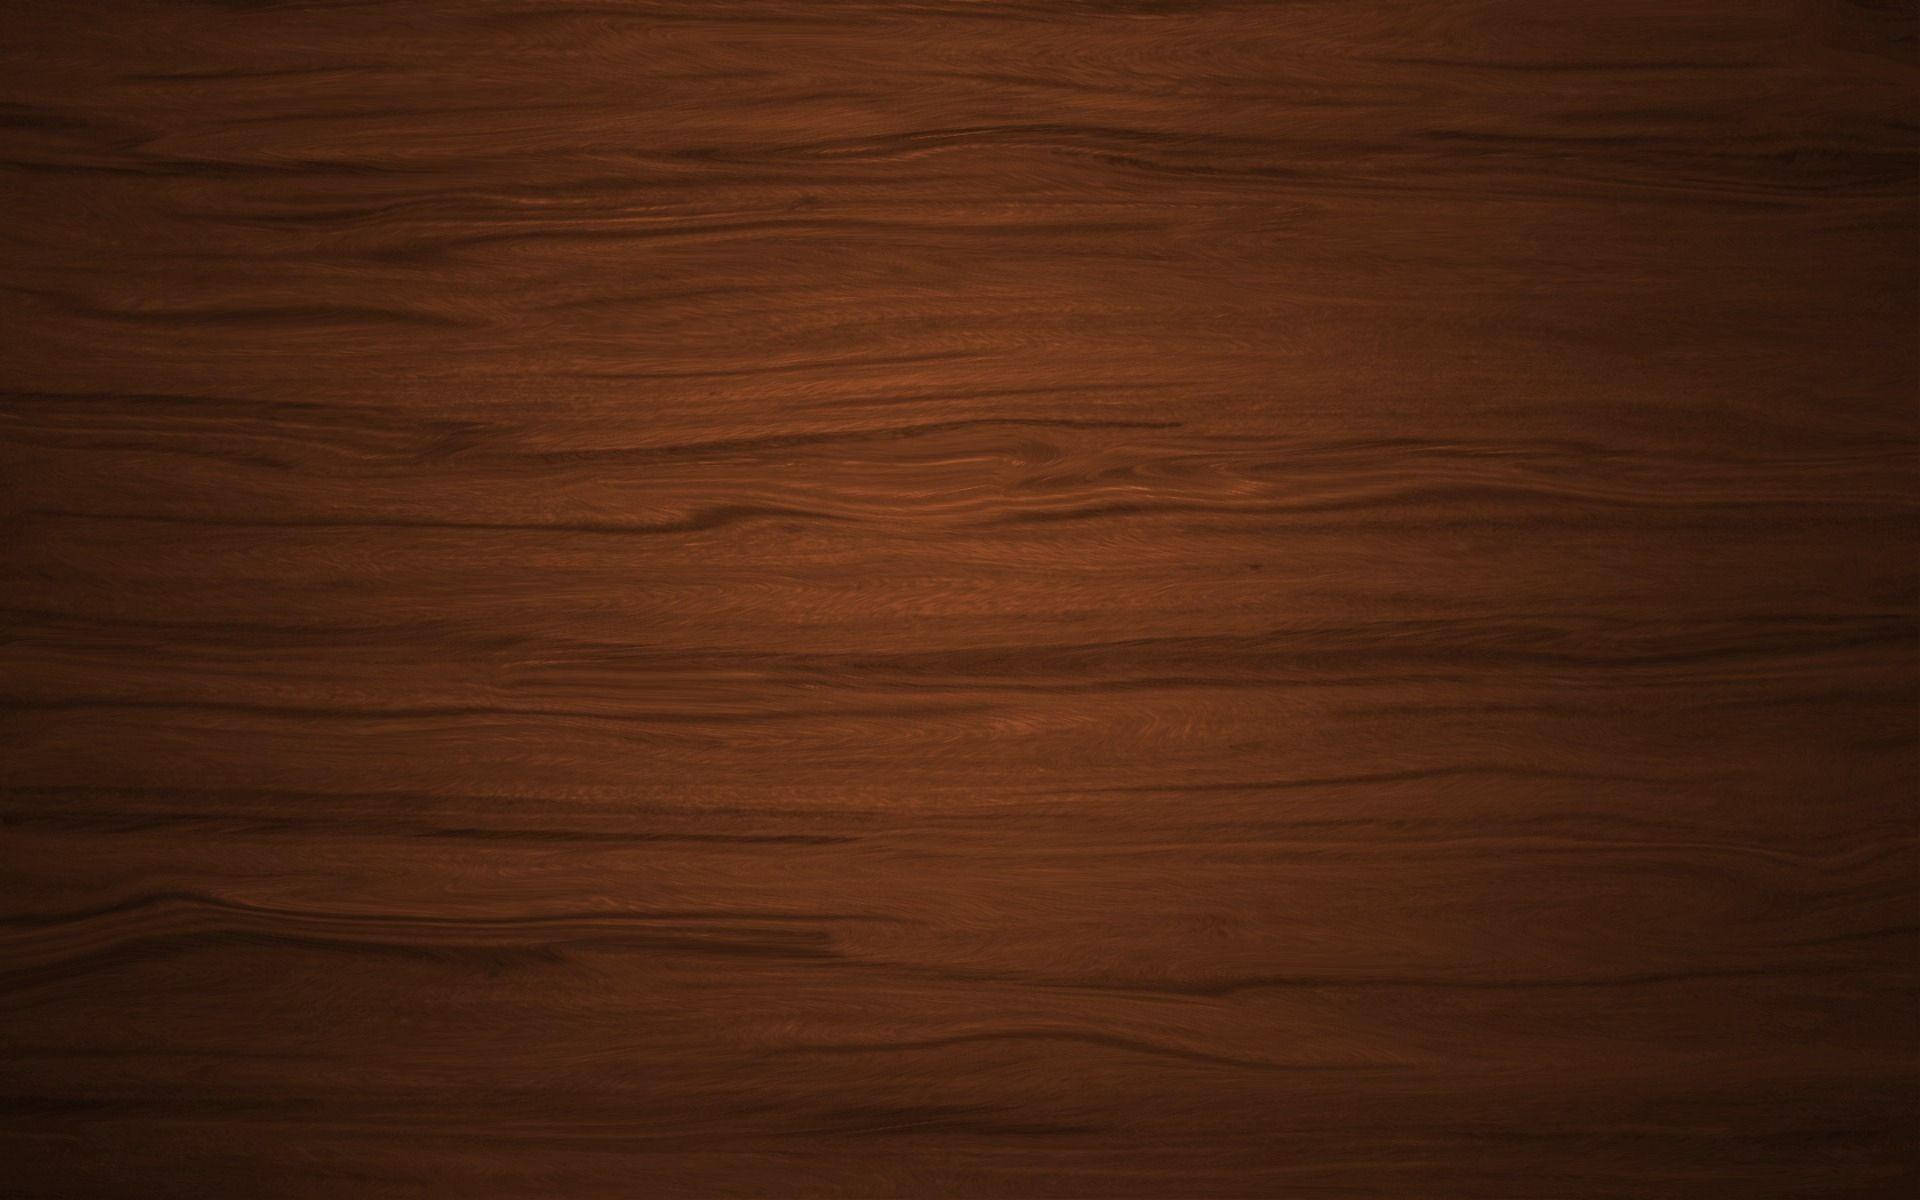 Dark Cherry Wood Texture Background